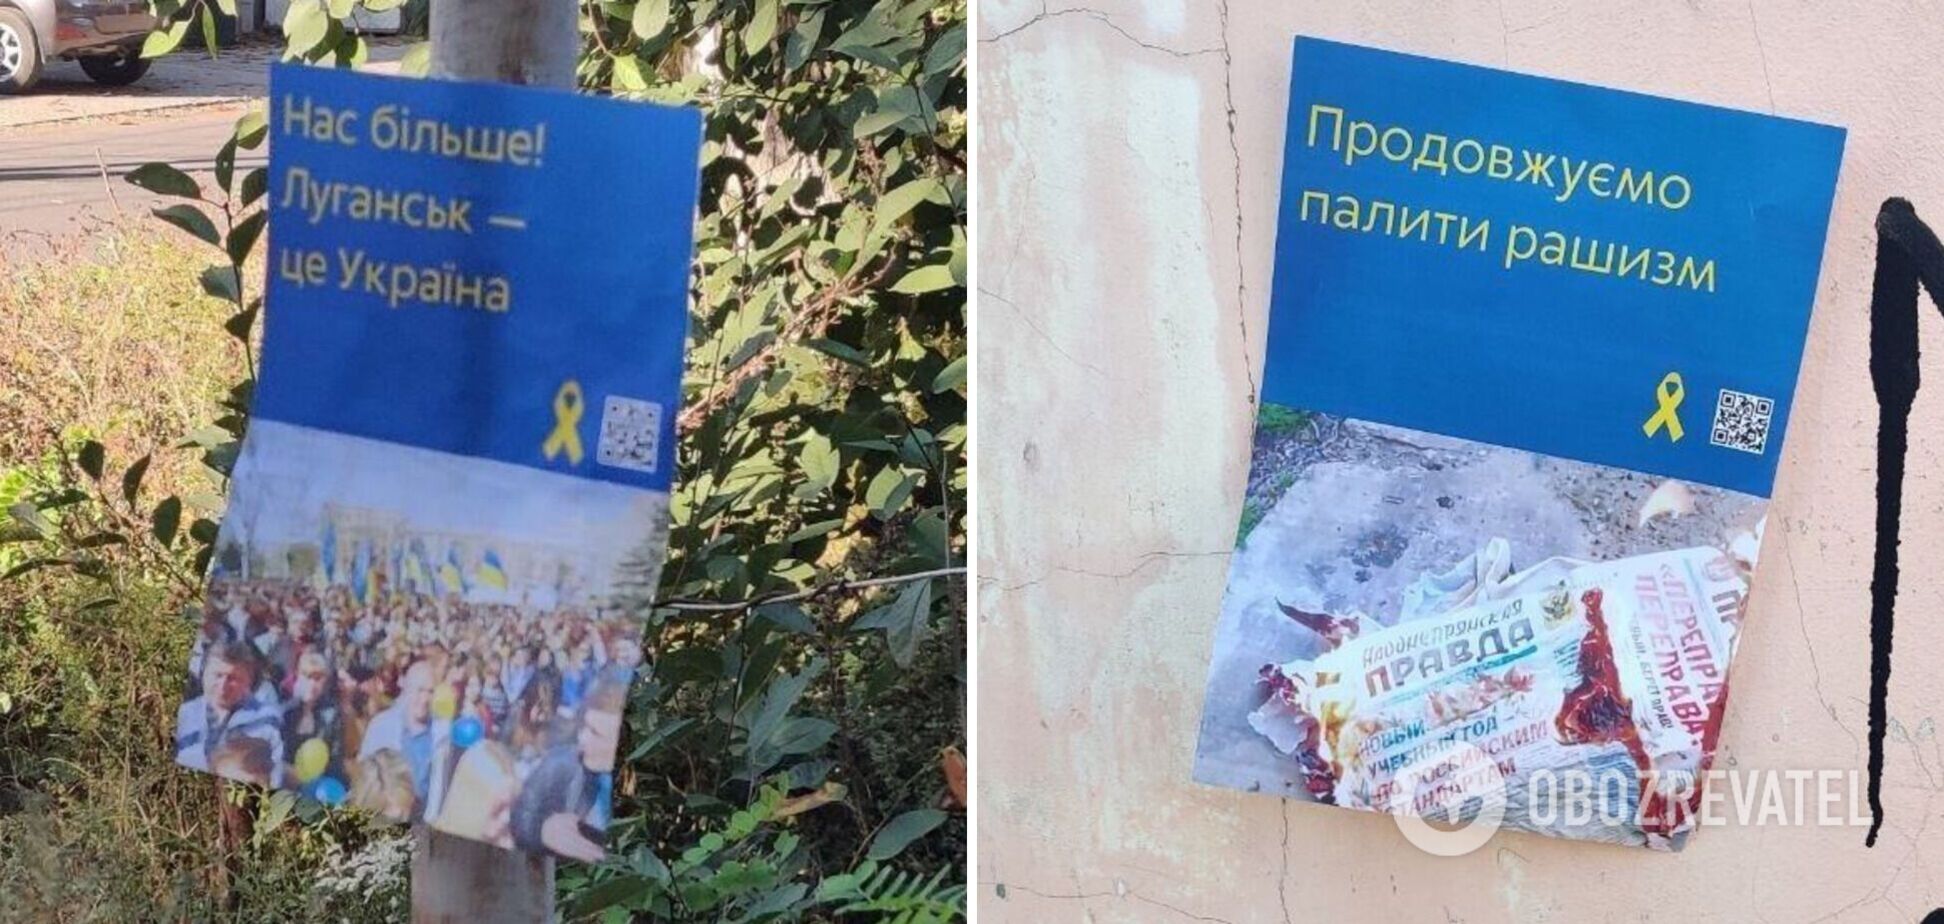 'Нас більше': в окупованих Донецьку і Луганську патріоти влаштували сміливі акції. Фото 